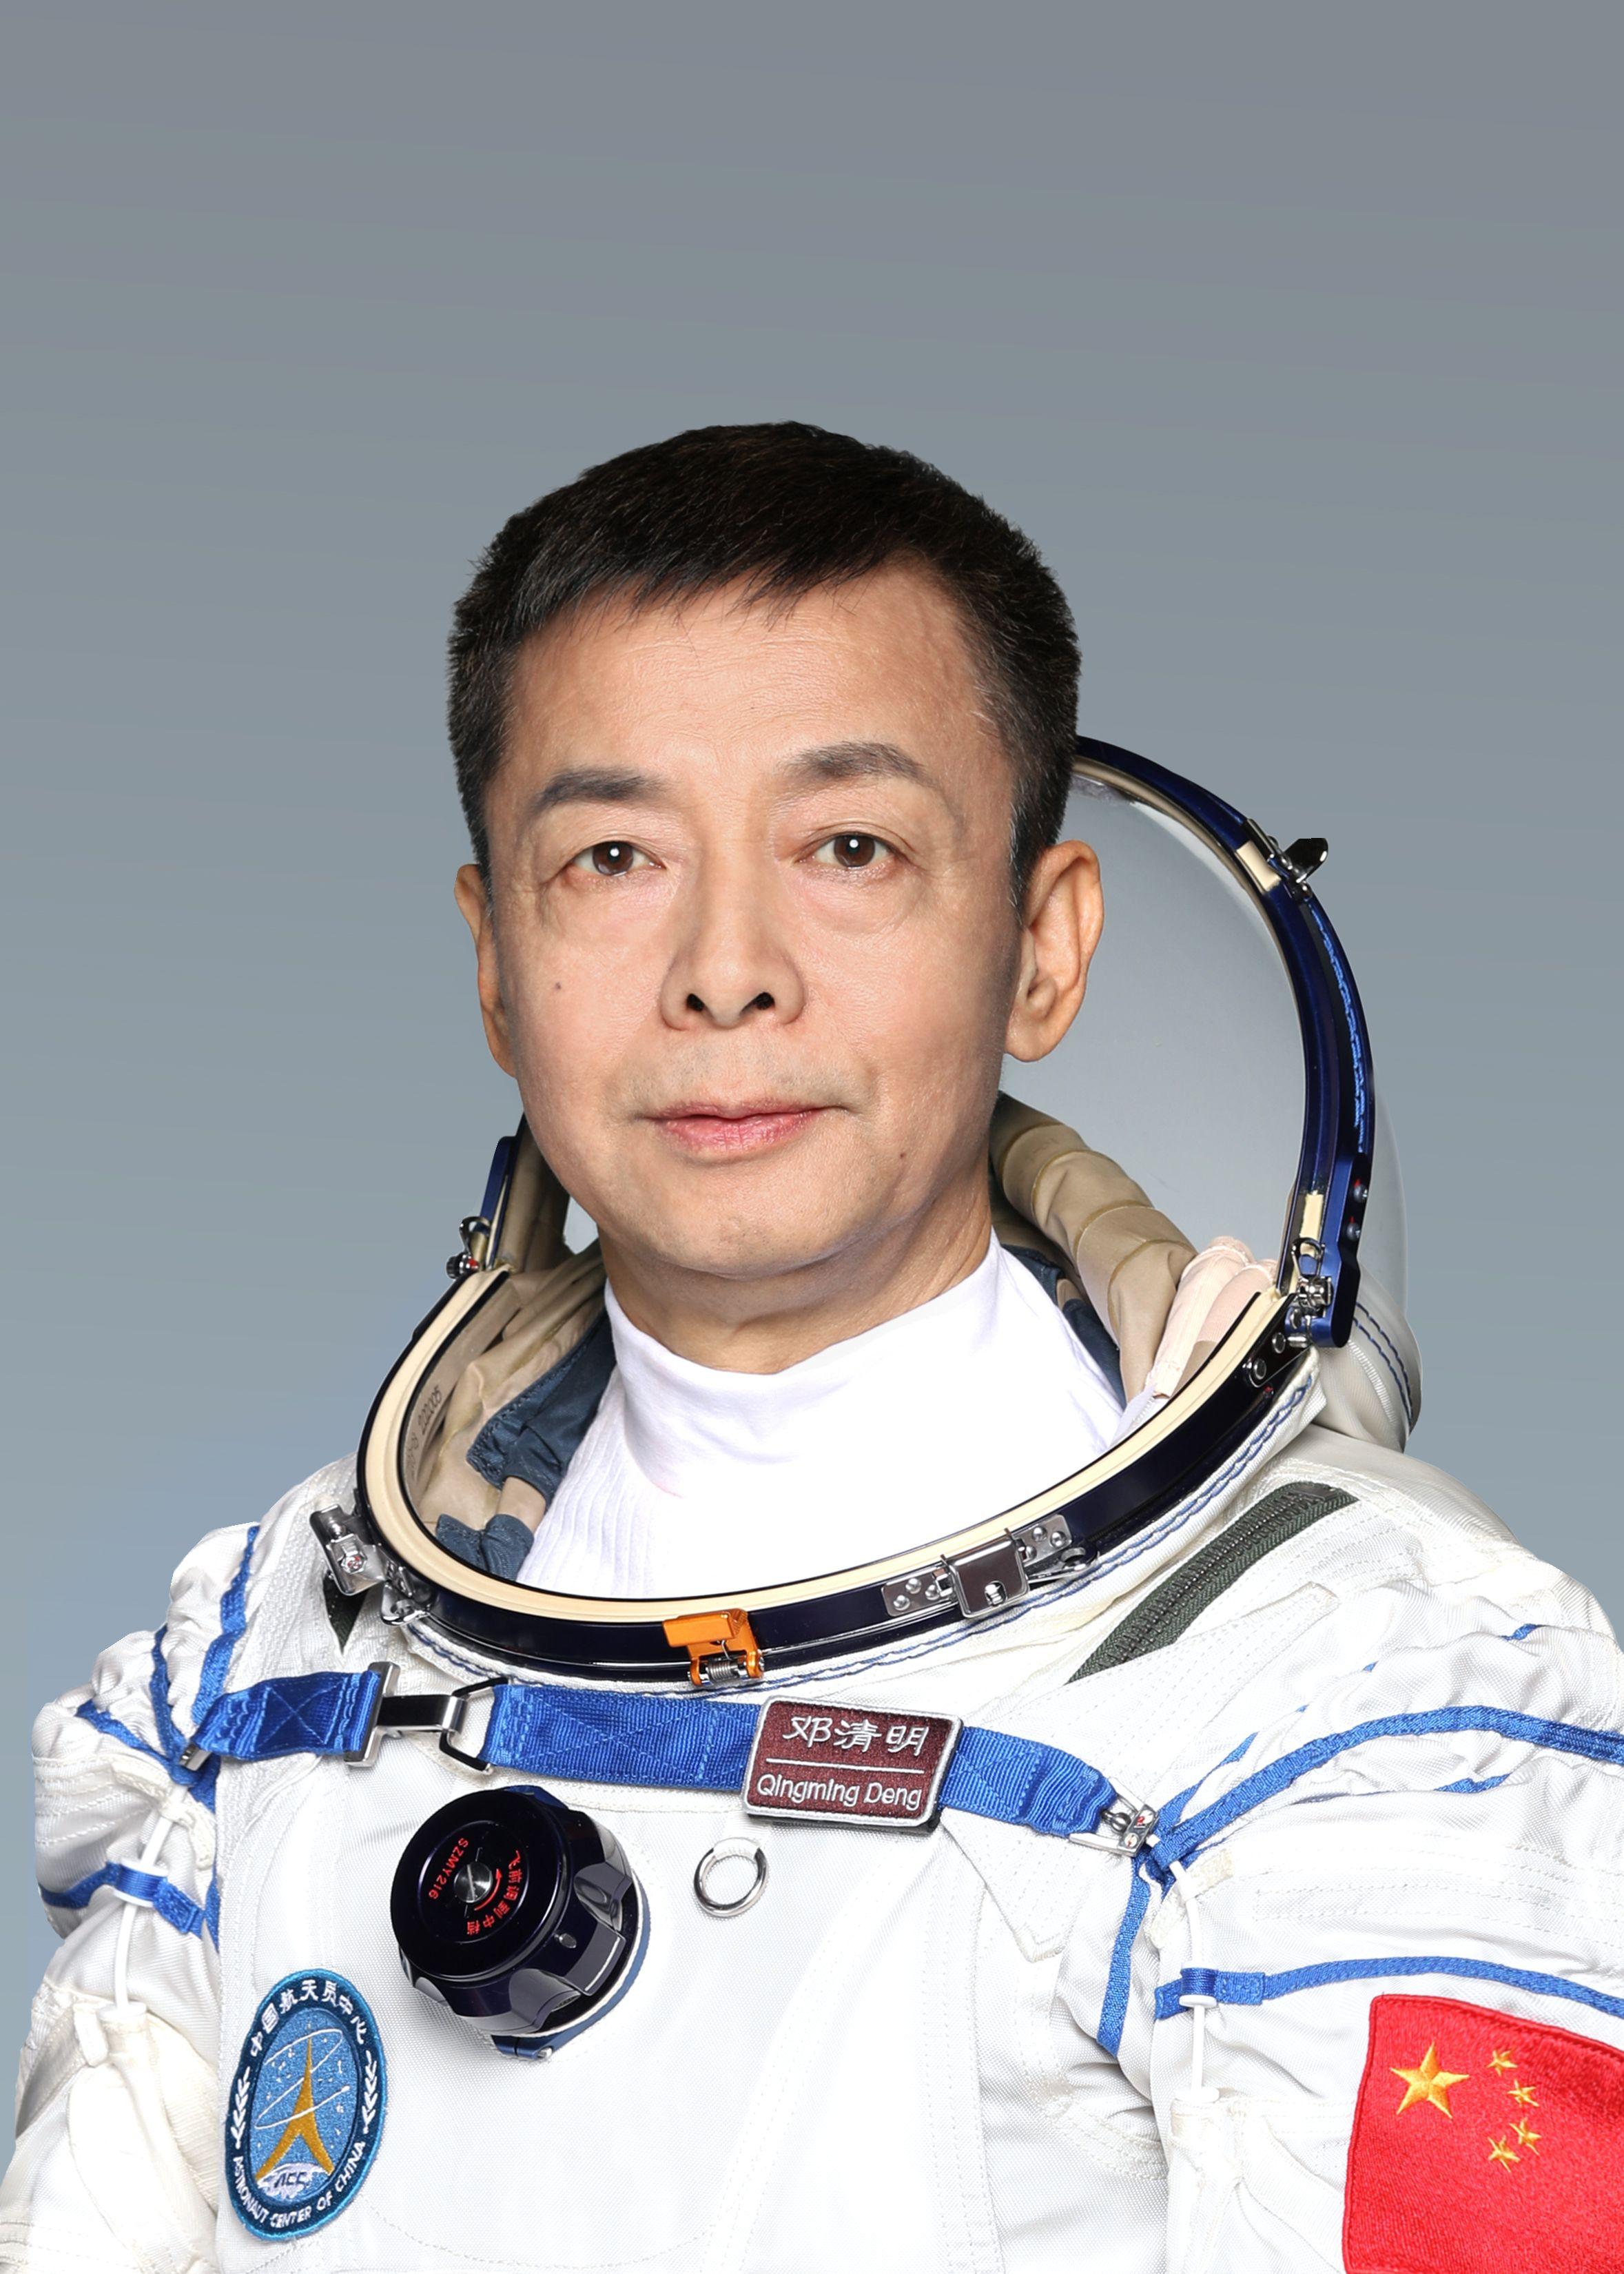 2005年11月26日,中共中央,国务院,中央军委授予费俊龙英雄航天员